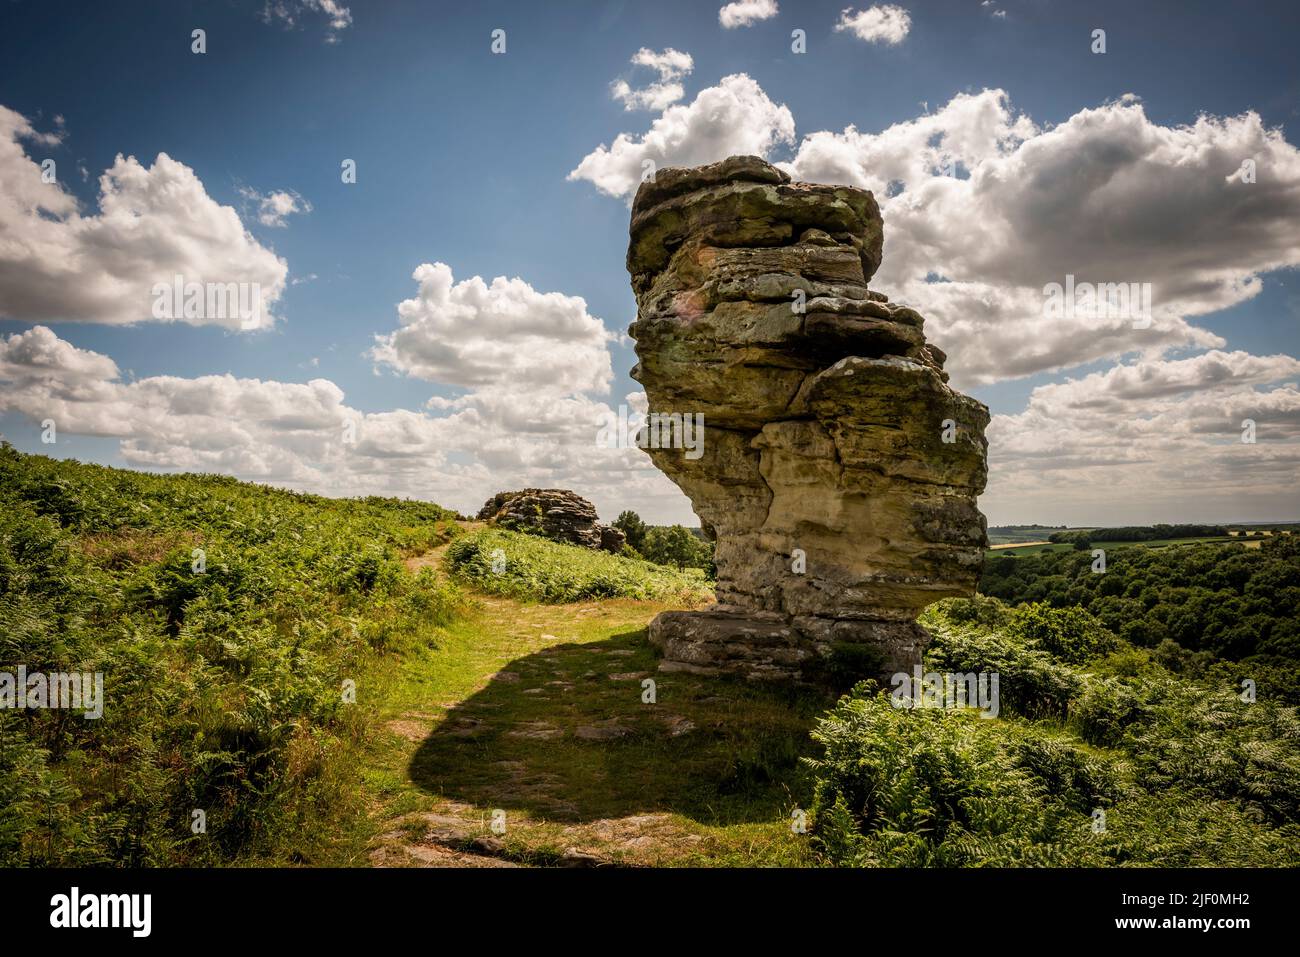 Le formazioni rocciose naturali di Bridestones create dall'erosione nella Foresta di Dalby, North Yorkshire, Regno Unito Foto Stock